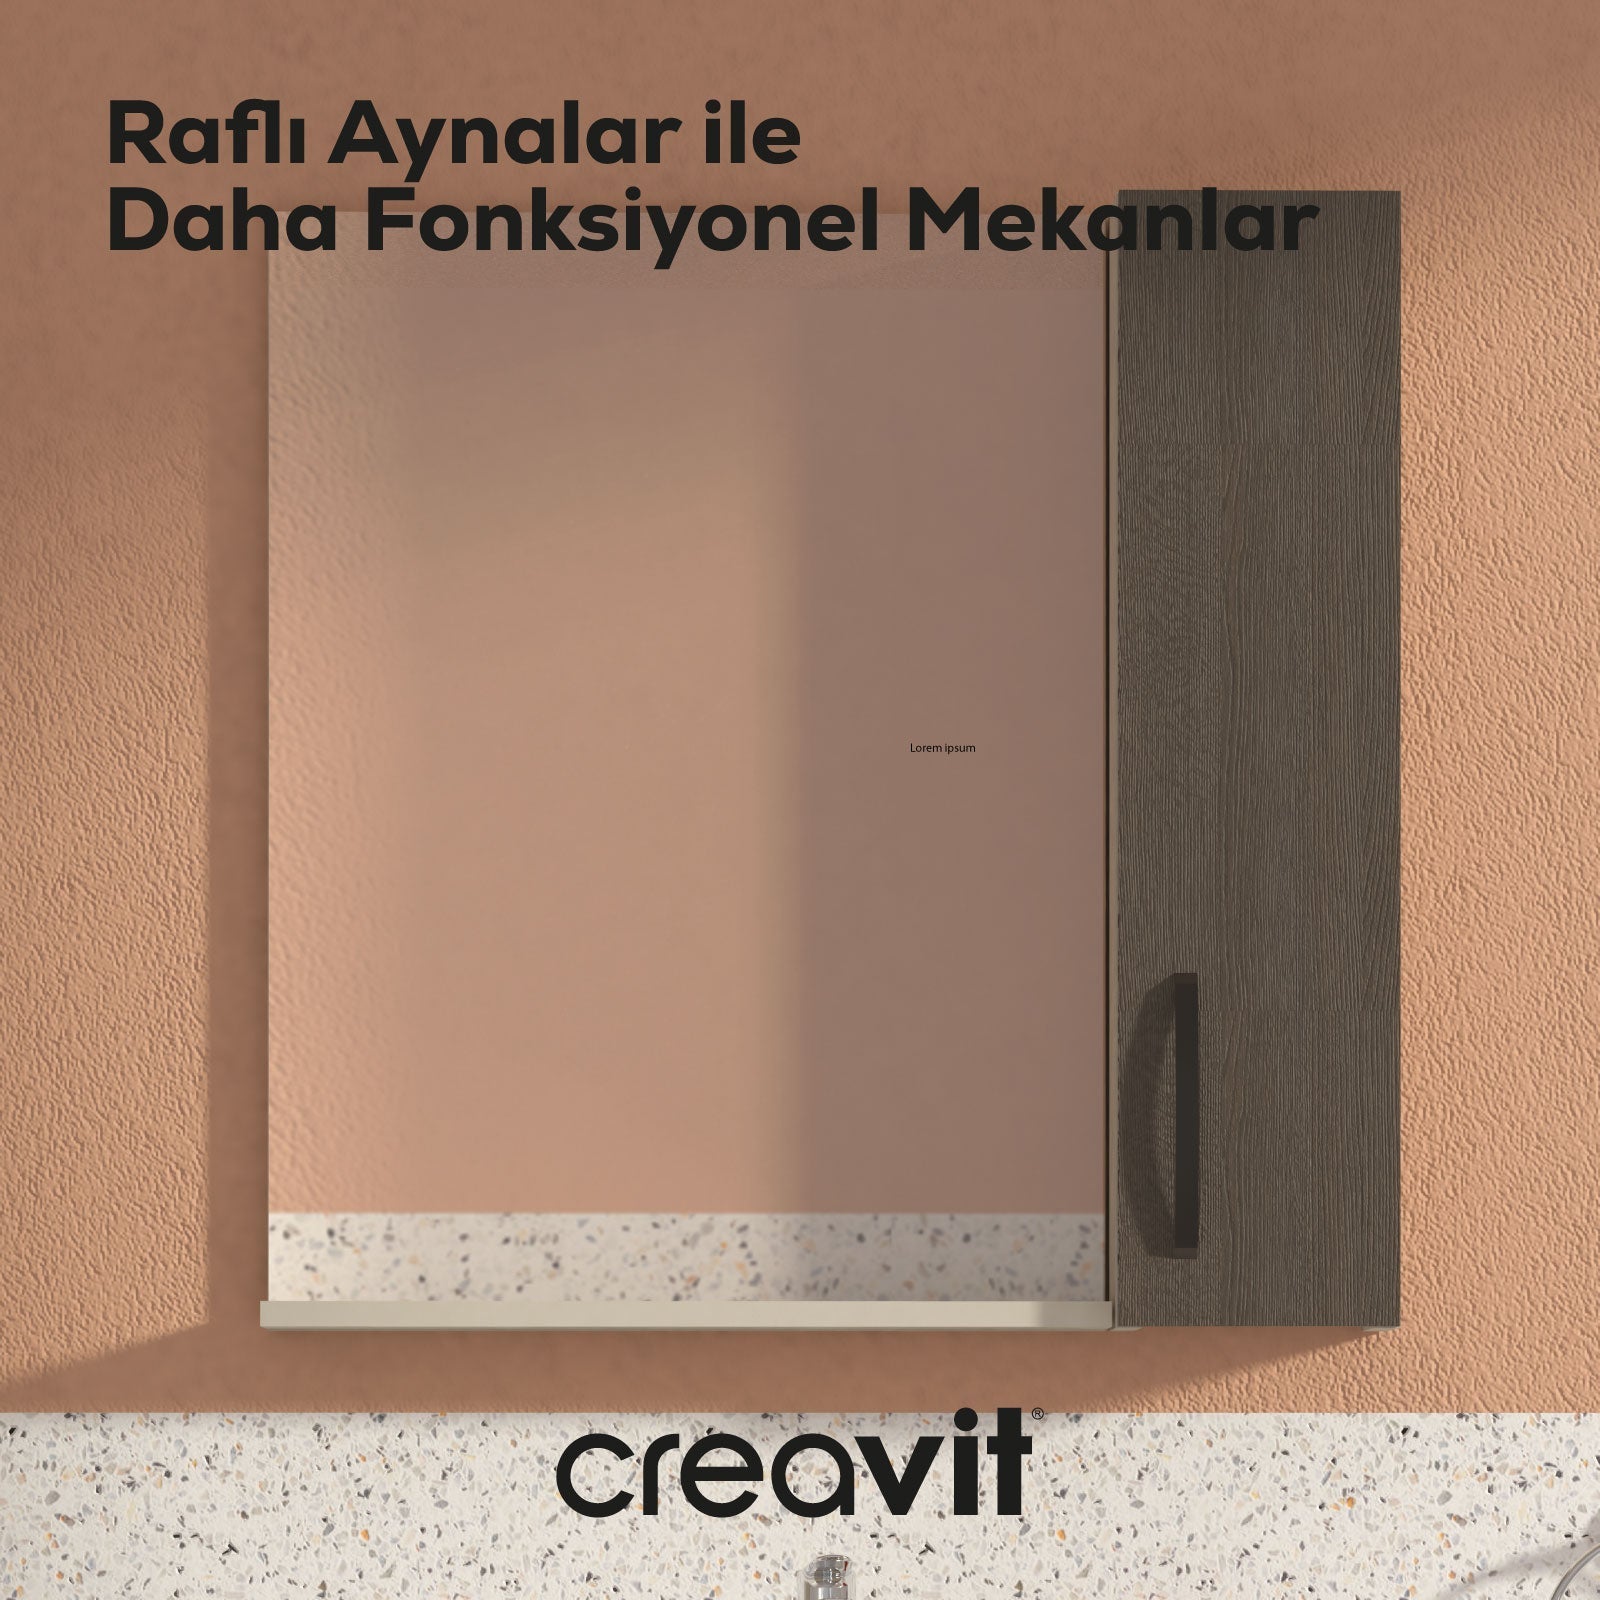 D10 45 cm Melamin Raflı Ayna Gri - Creavit | Banyo Bu Tarafta